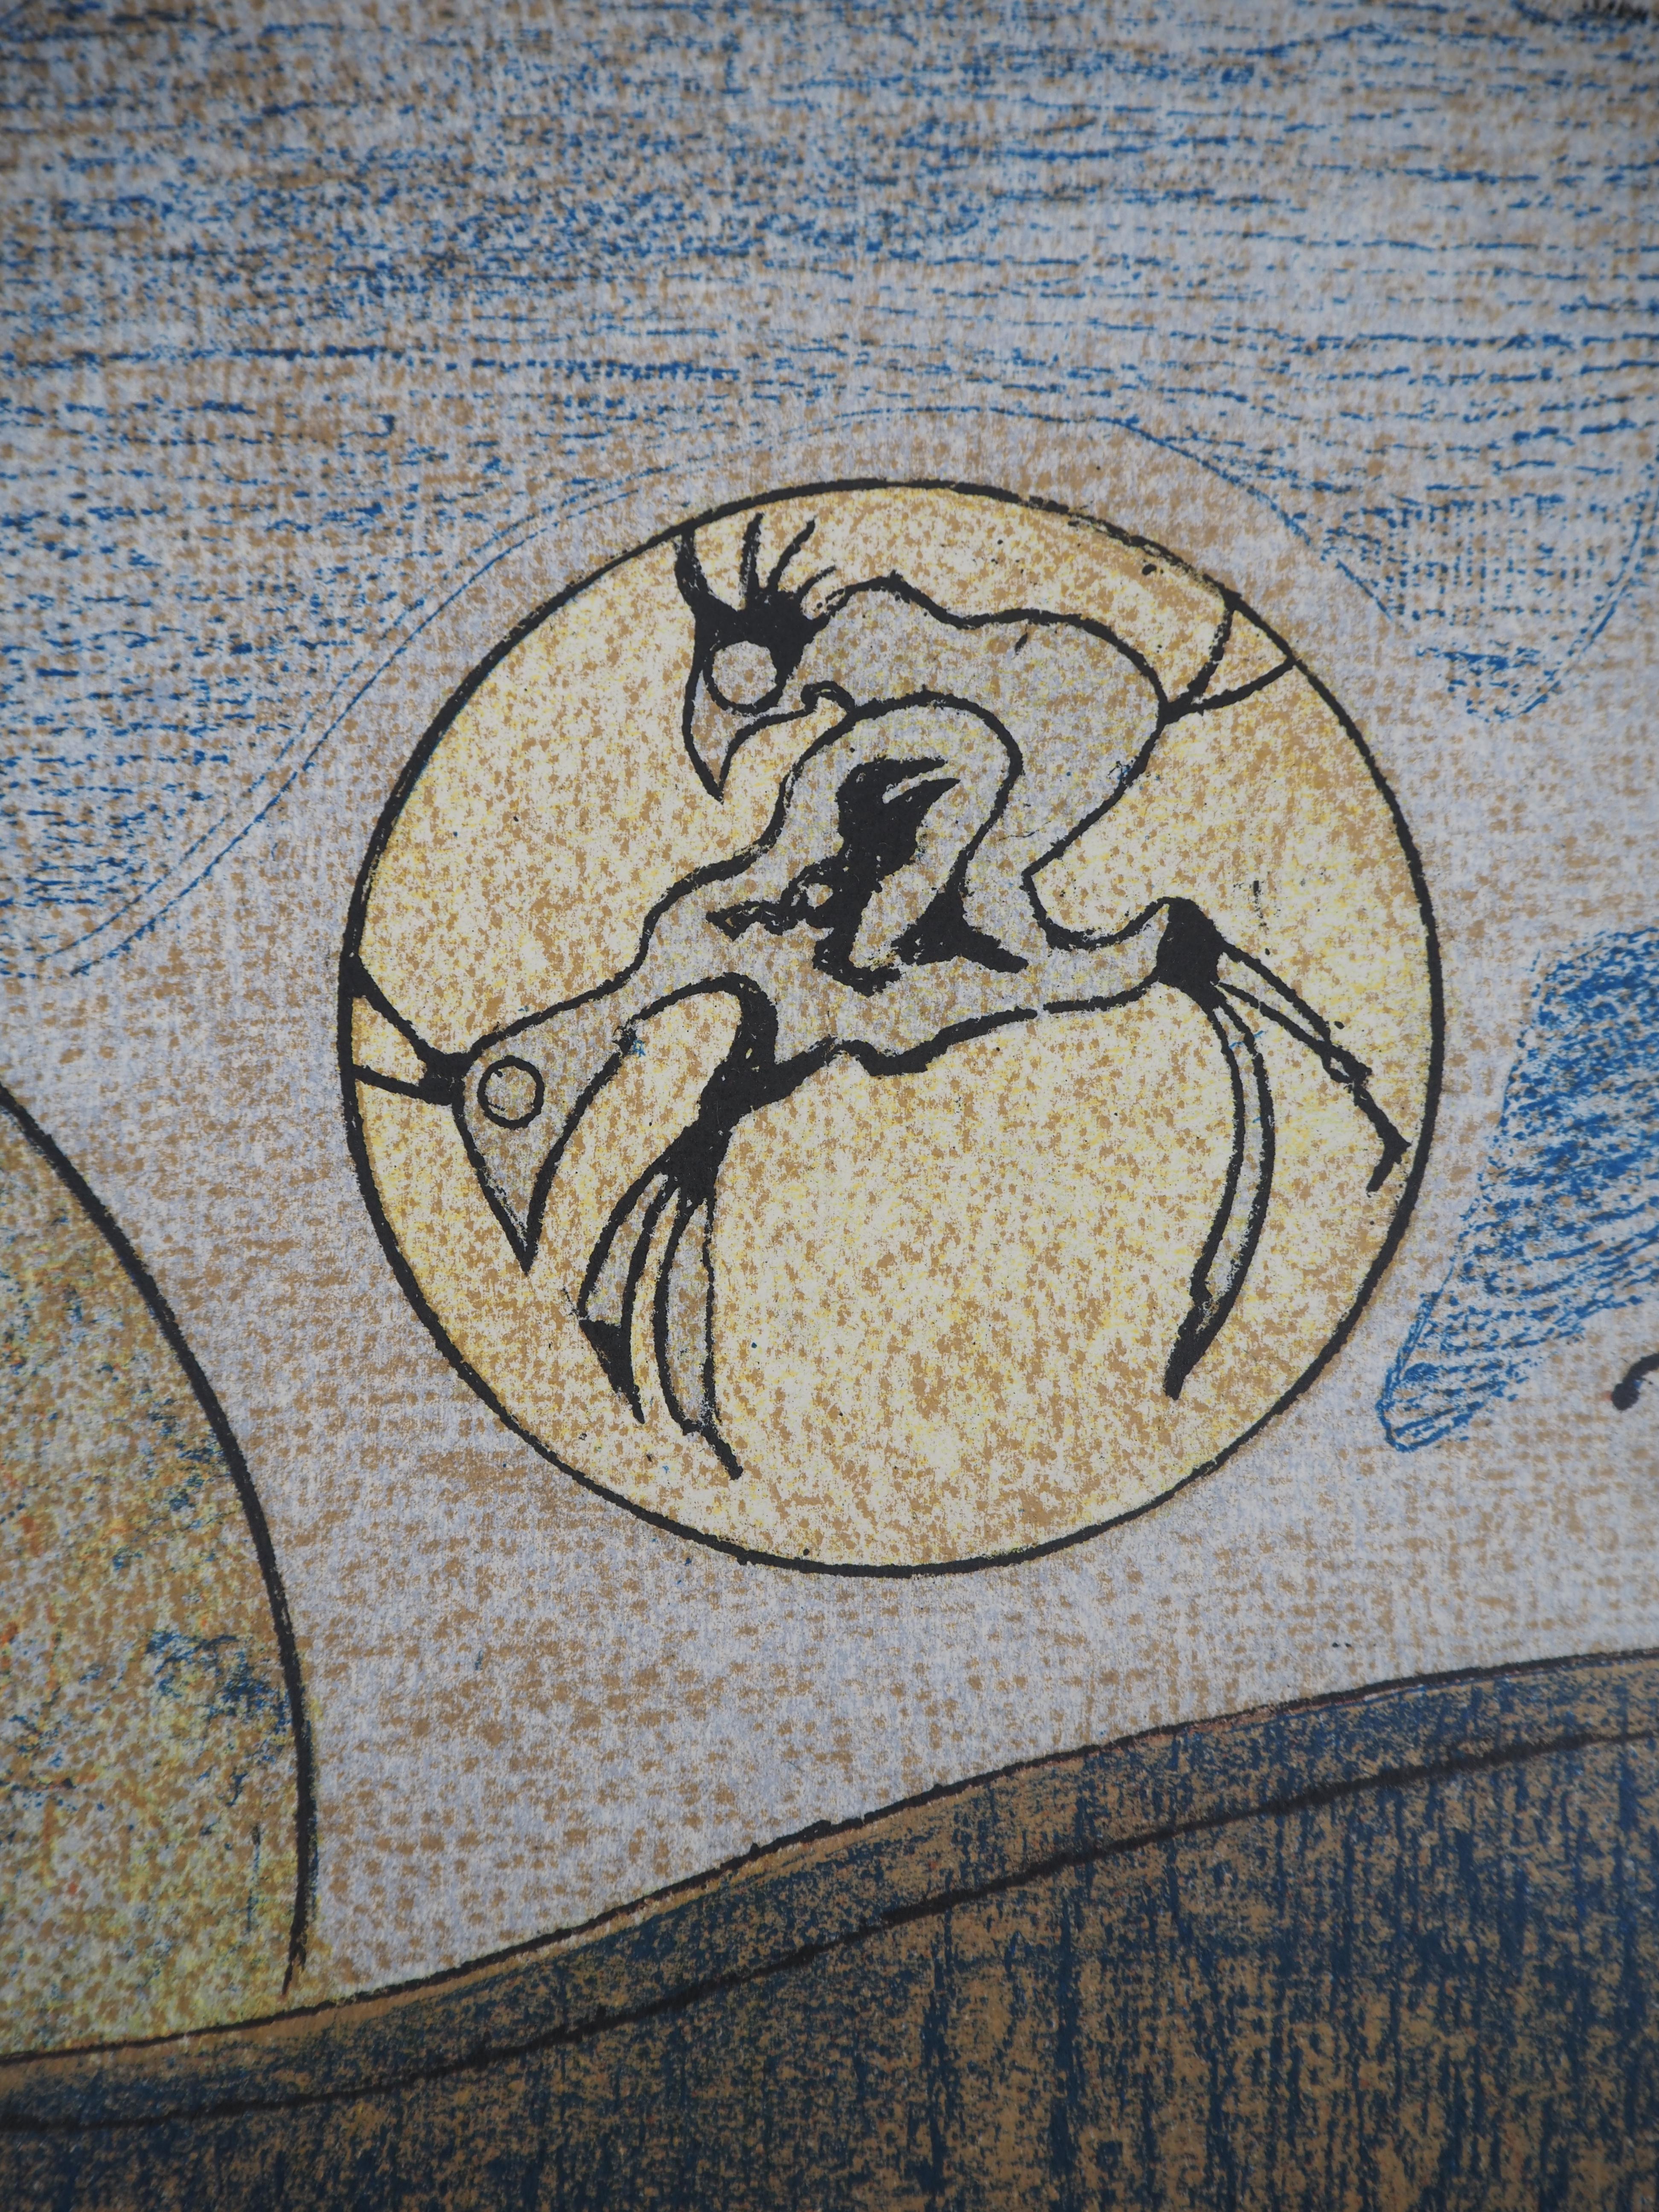 Max Ernst (1891-1976)
Rêve surréaliste : couple de coqs, 1970

Lithographie originale en couleur 
Signature imprimée dans la plaque
Sur vélin d'Arches 33.5 × 61 cm (c. 13 x 24 in)

RÉFÉRENCES : Catalogue raisonné 